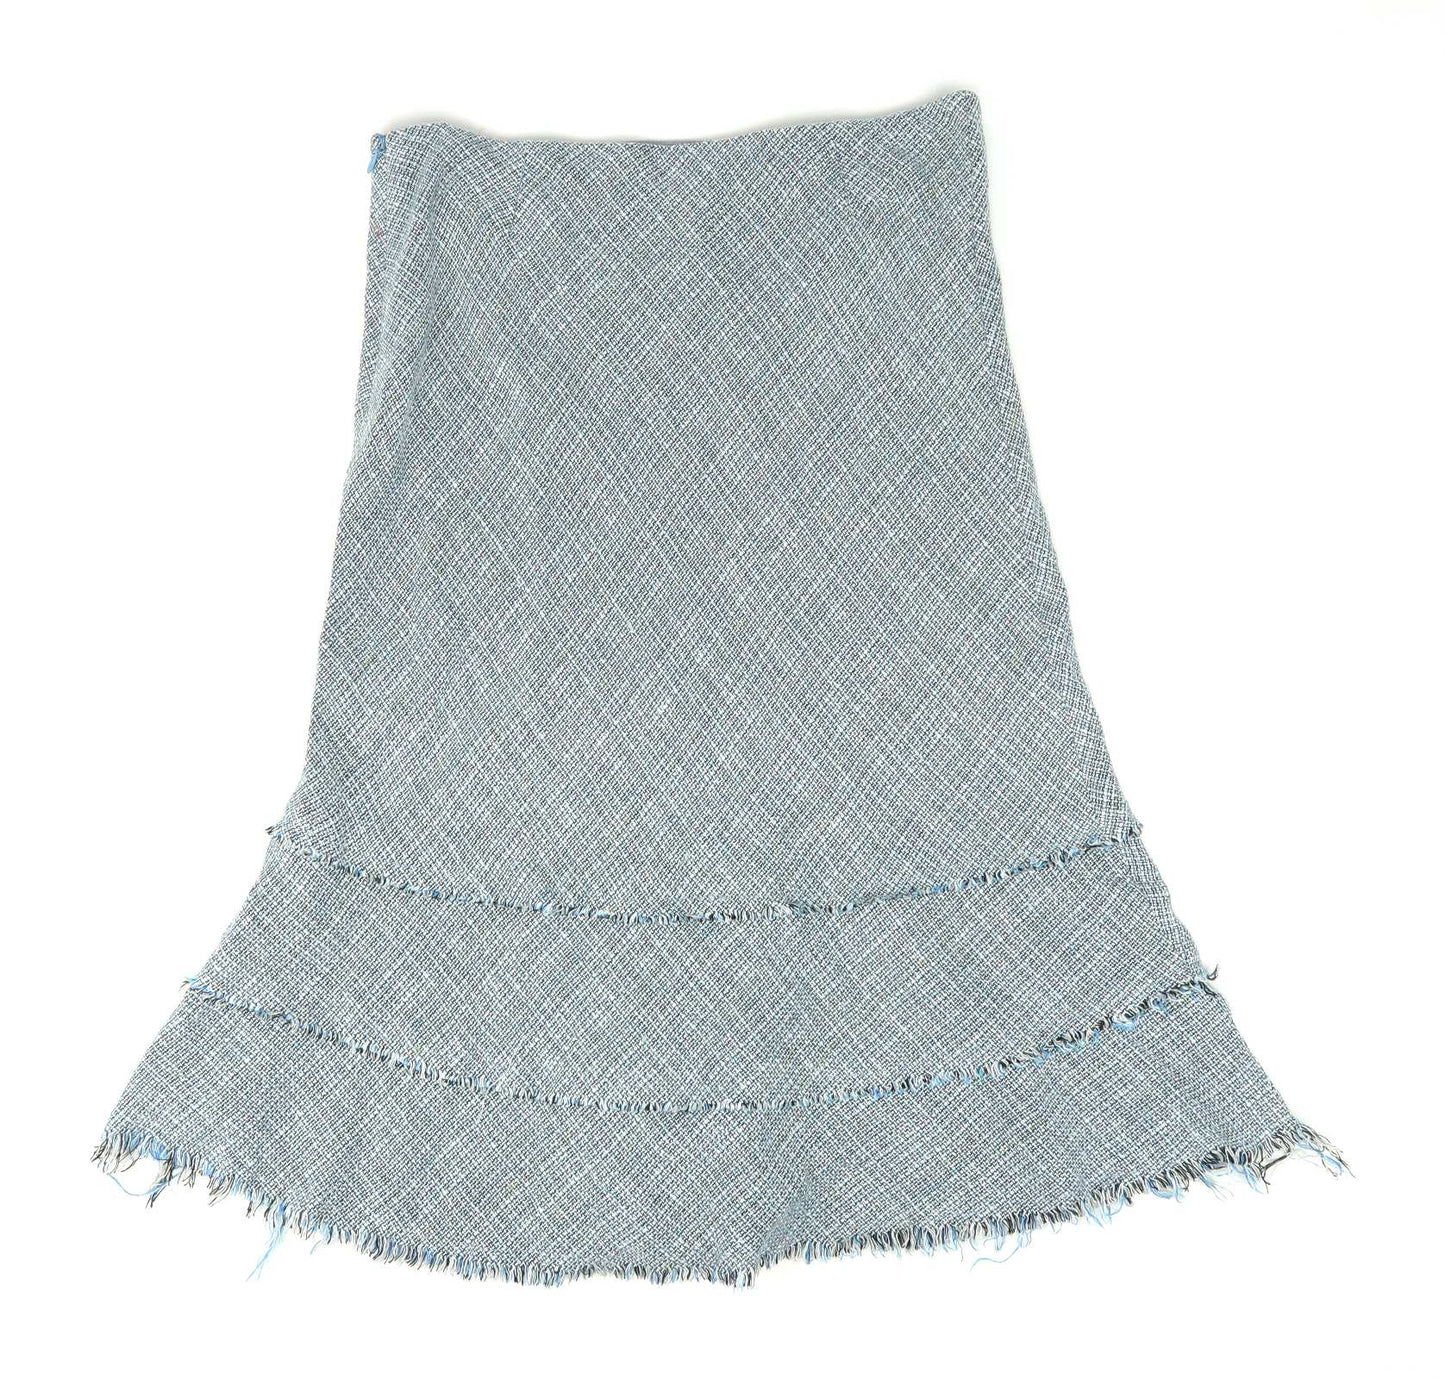 Kew Womens Size 10 Blue Textured Flare Skirt (Regular)